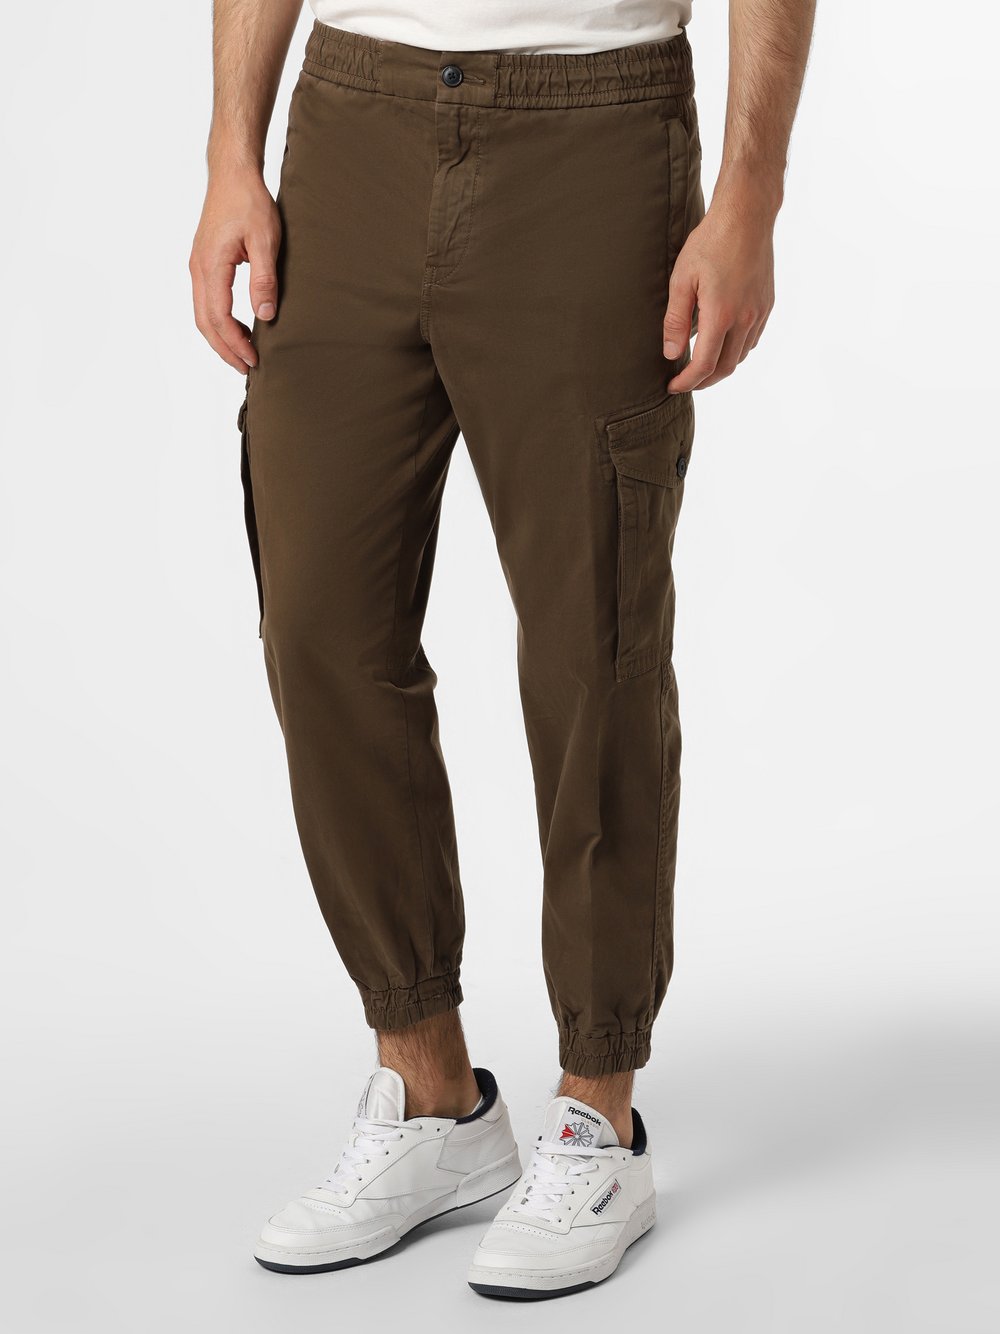 BOSS Casual - Spodnie męskie – Seiland, zielony